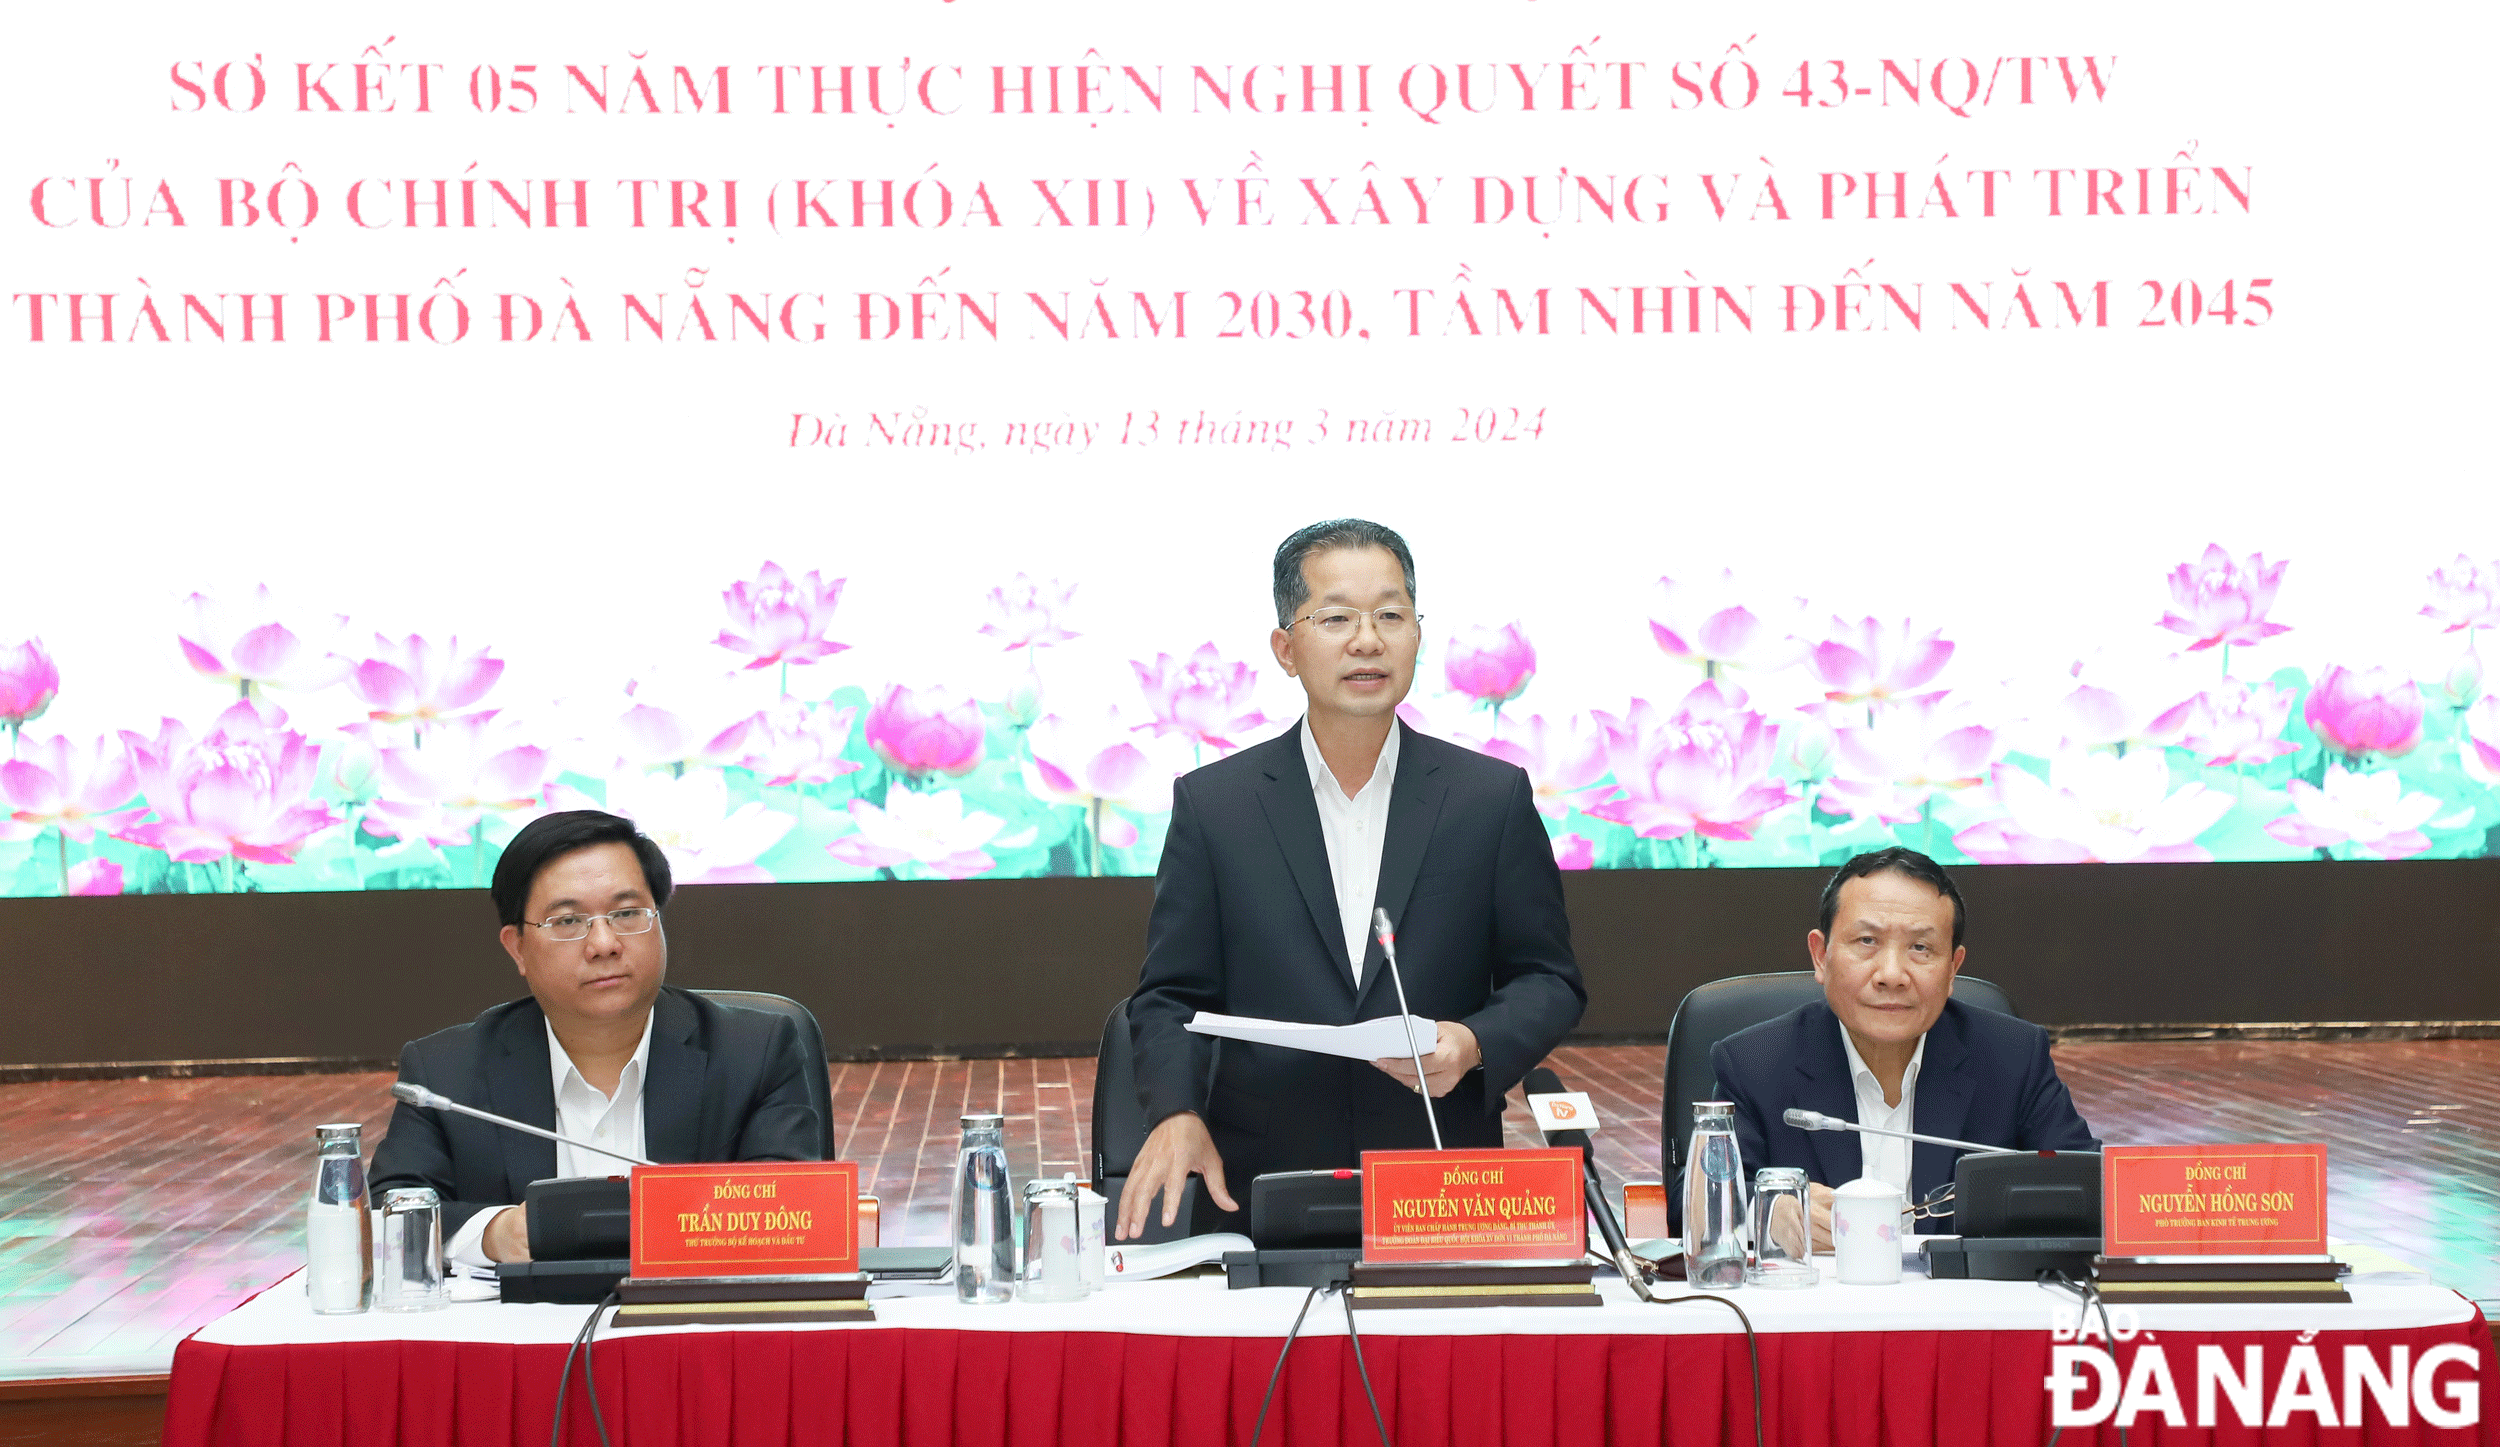 Nghị quyết số 43-NQ/TW mở ra nhiều cơ hội, tiềm năng lớn để Đà Nẵng phát triển